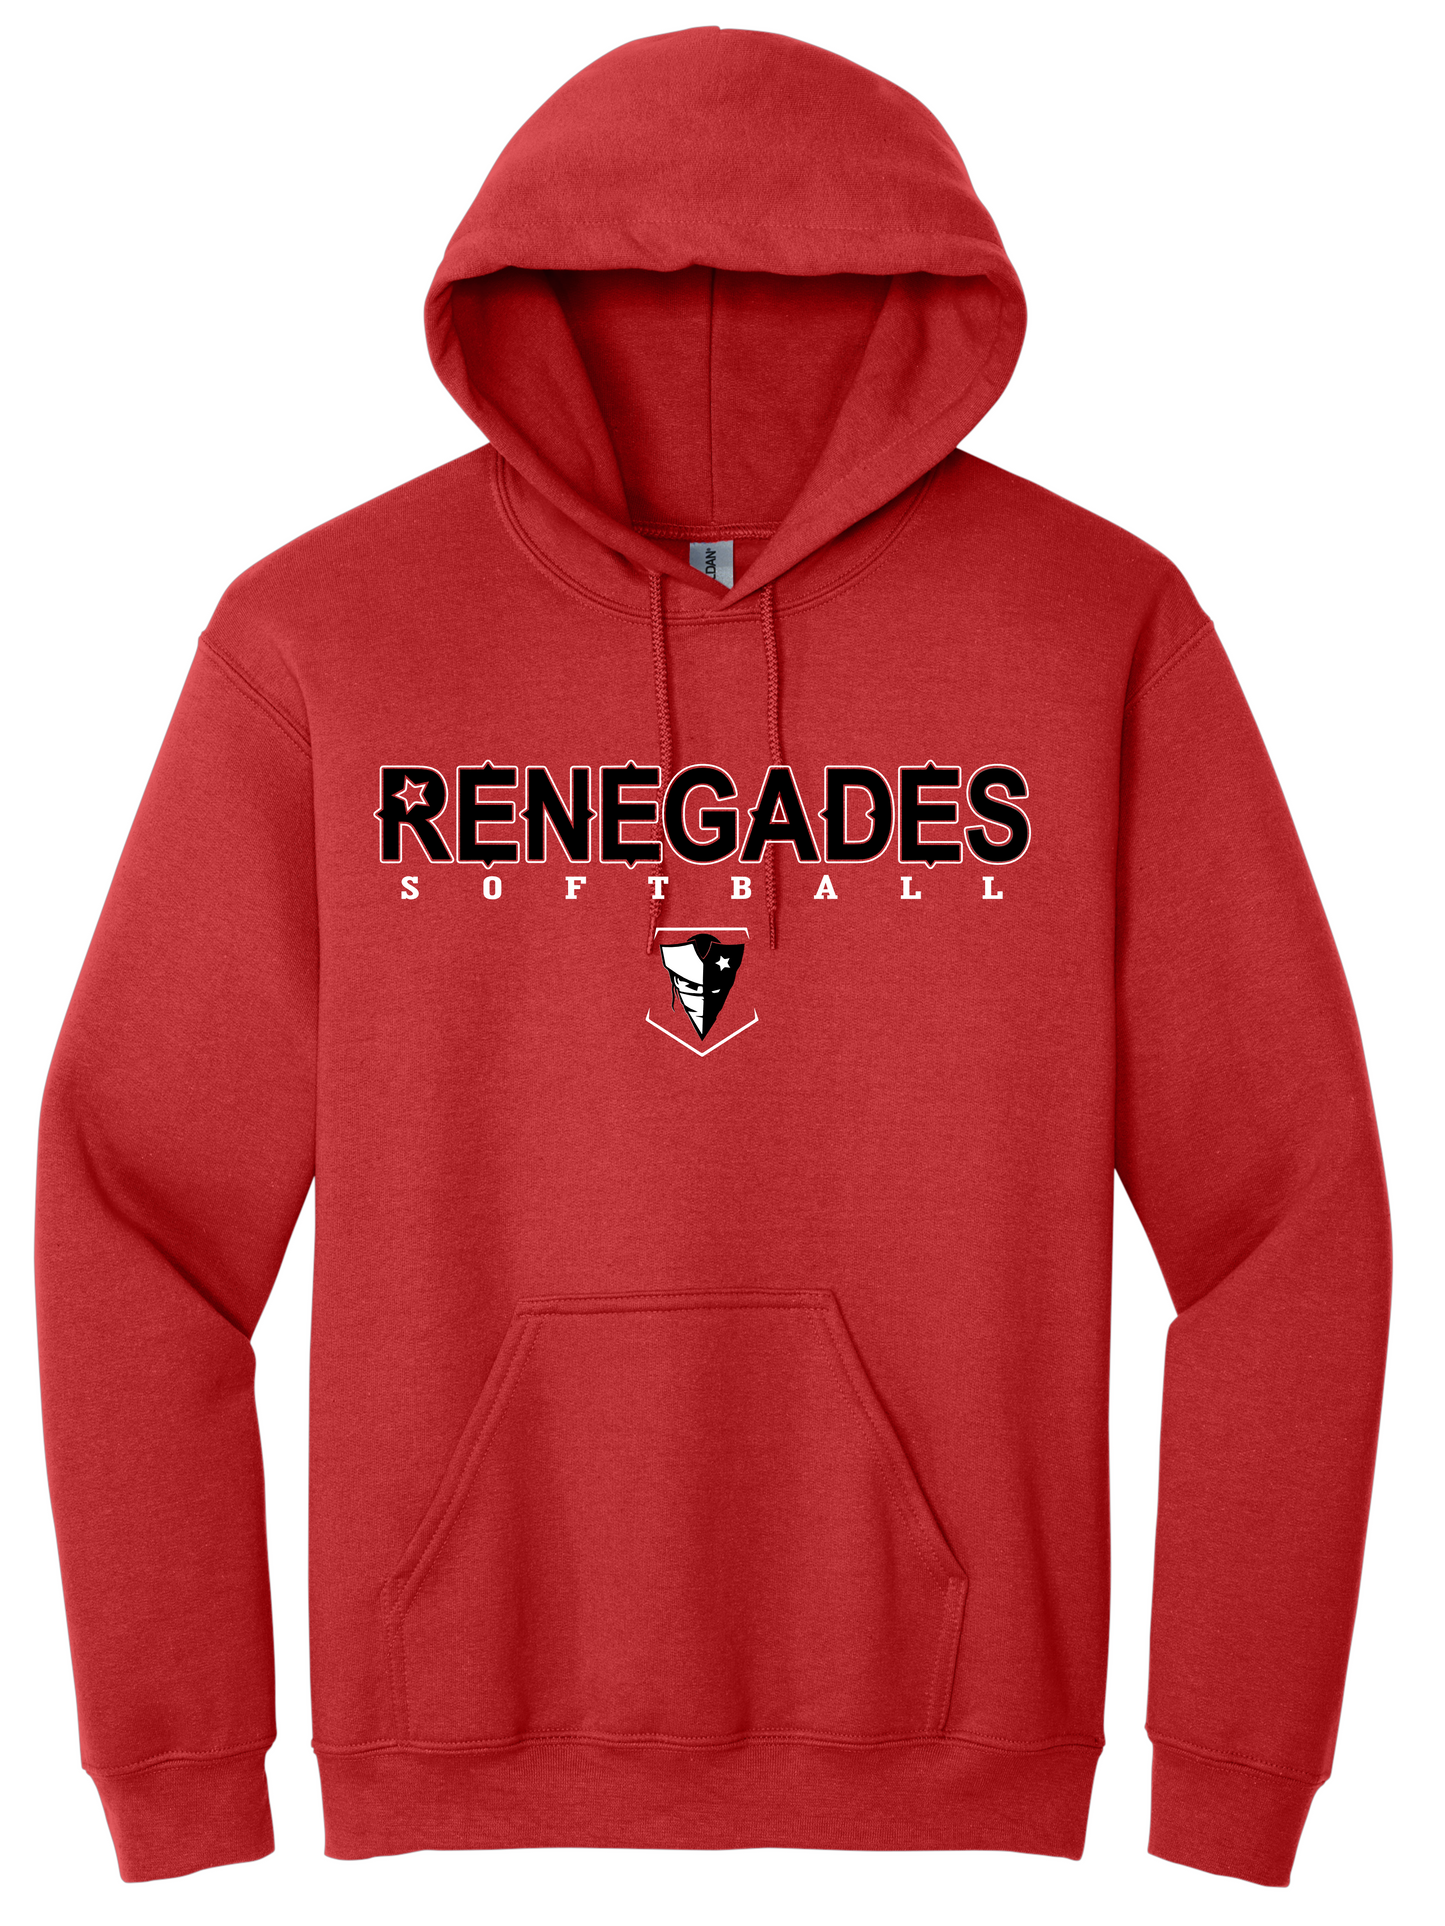 Renegades Softball Vintage Hoodie - Red